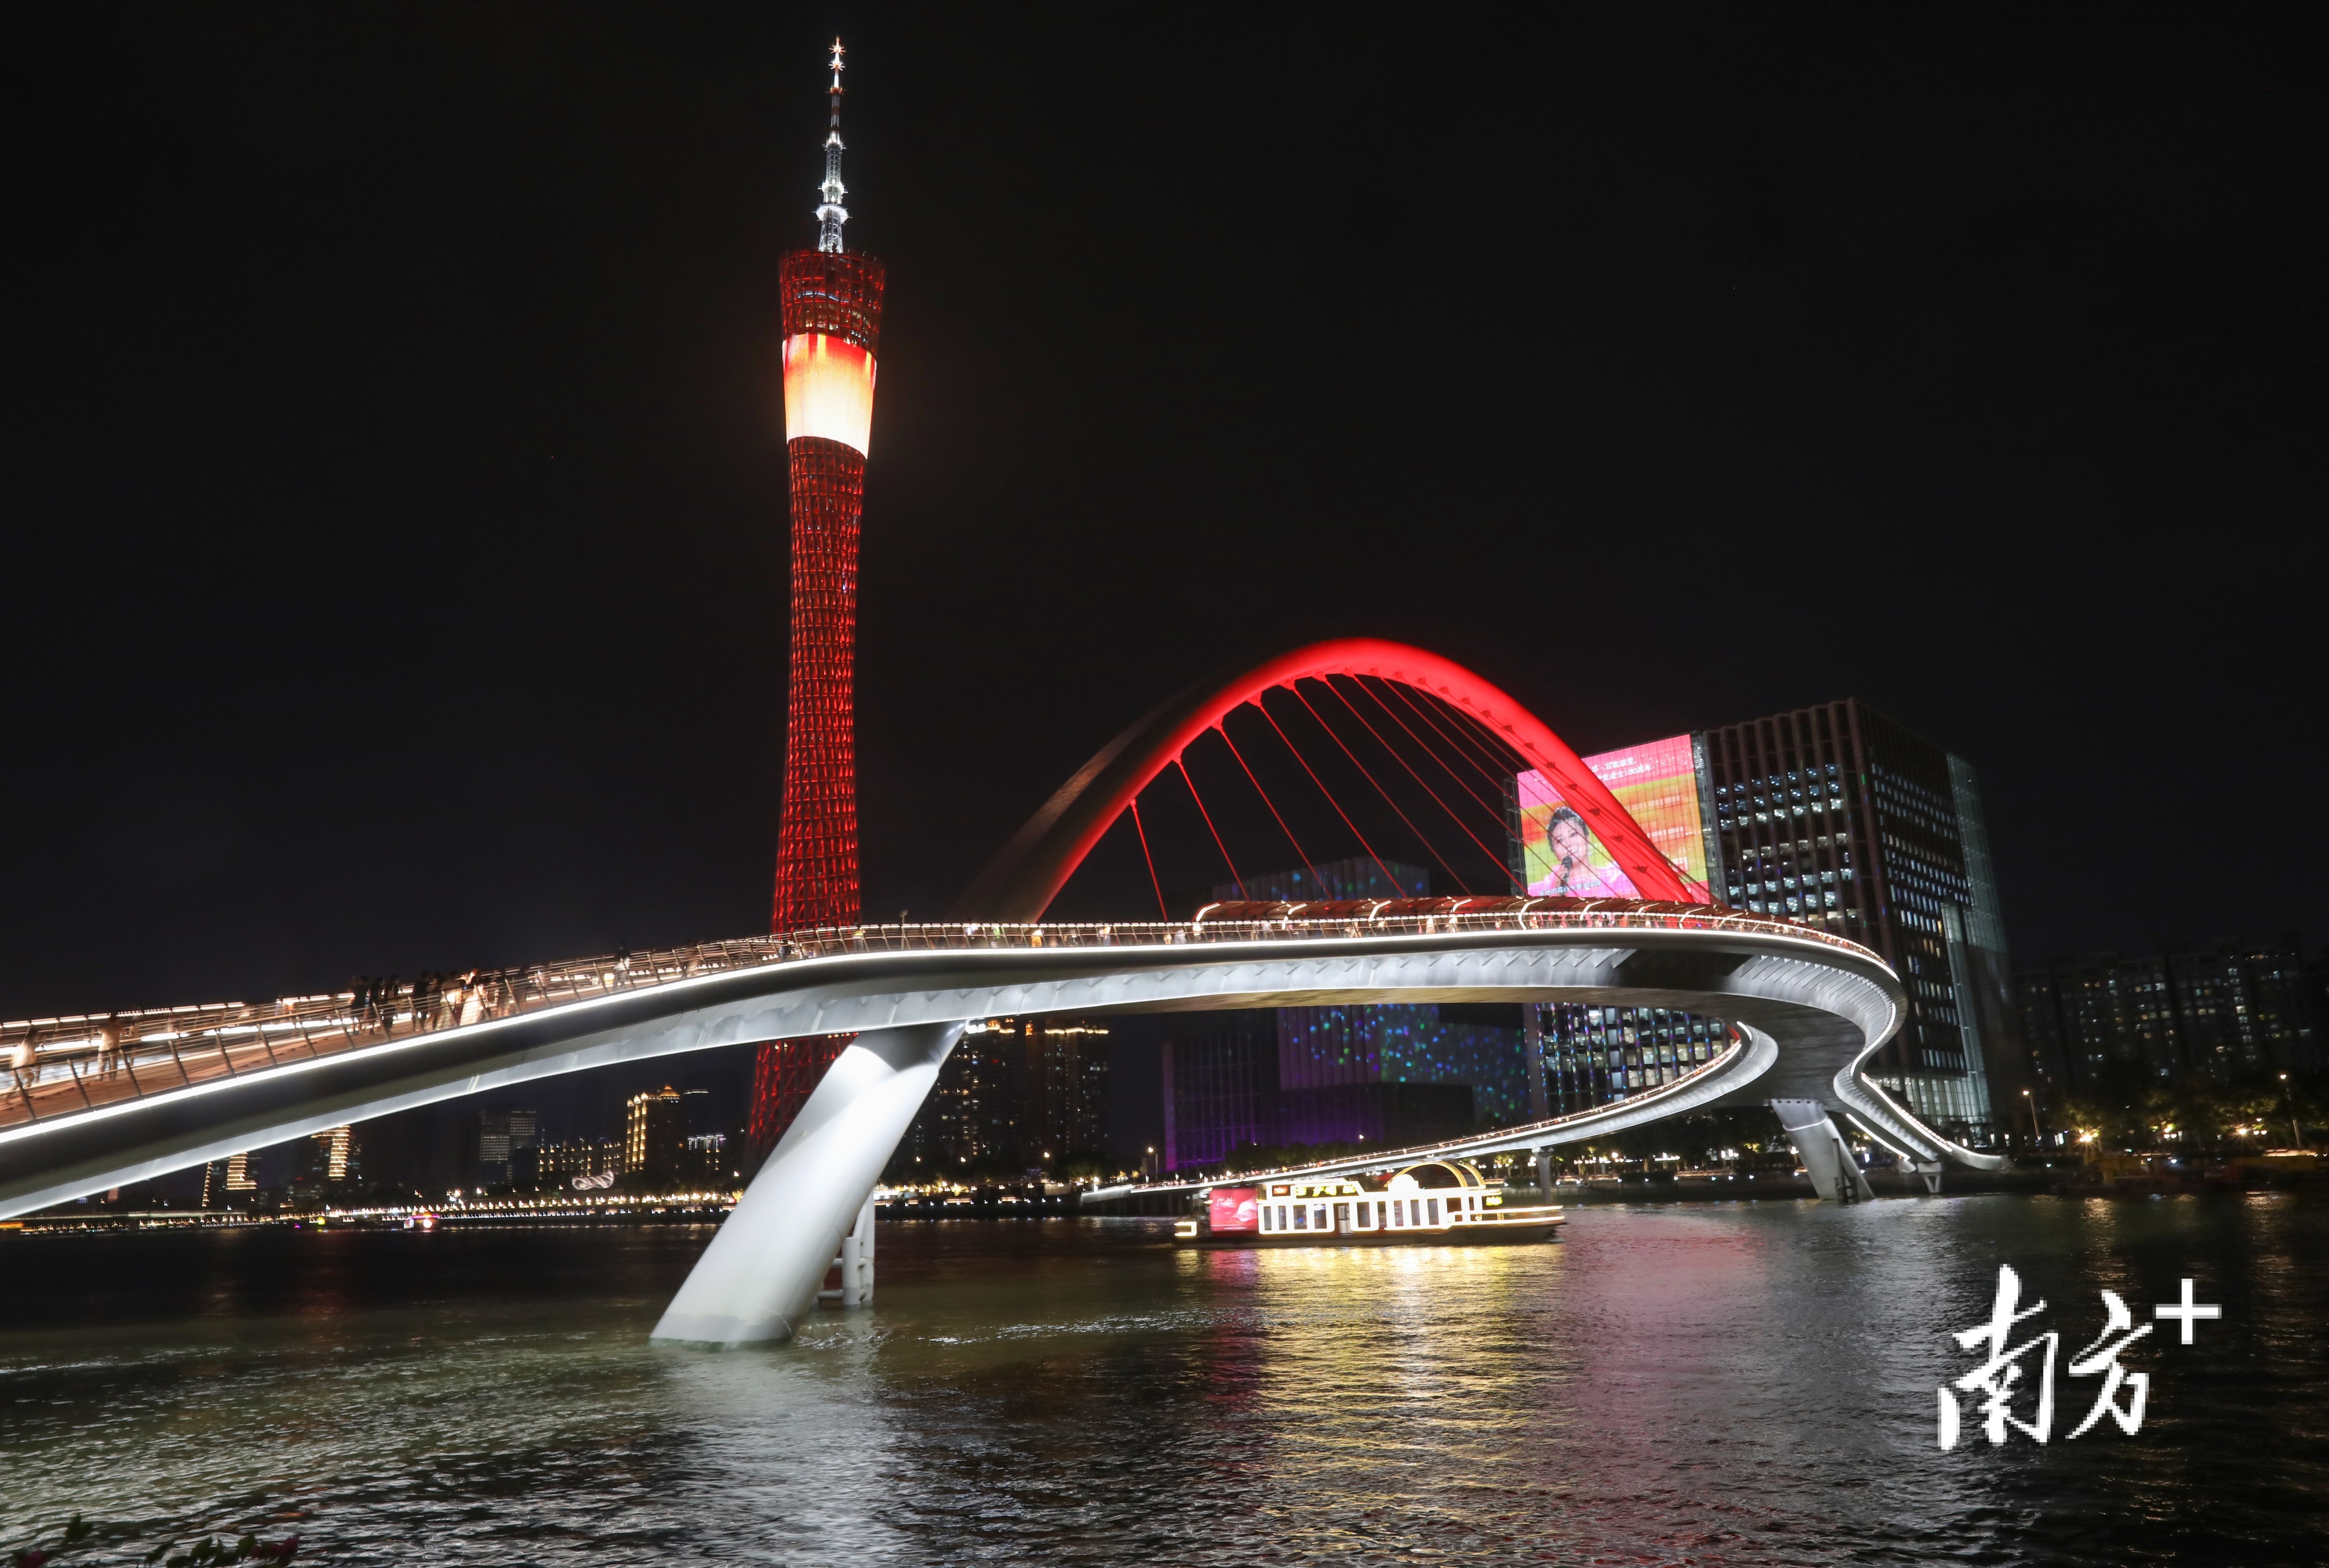 广州市市政工程设计研究总院有限公司总工程师宁平华介绍,大桥创新性